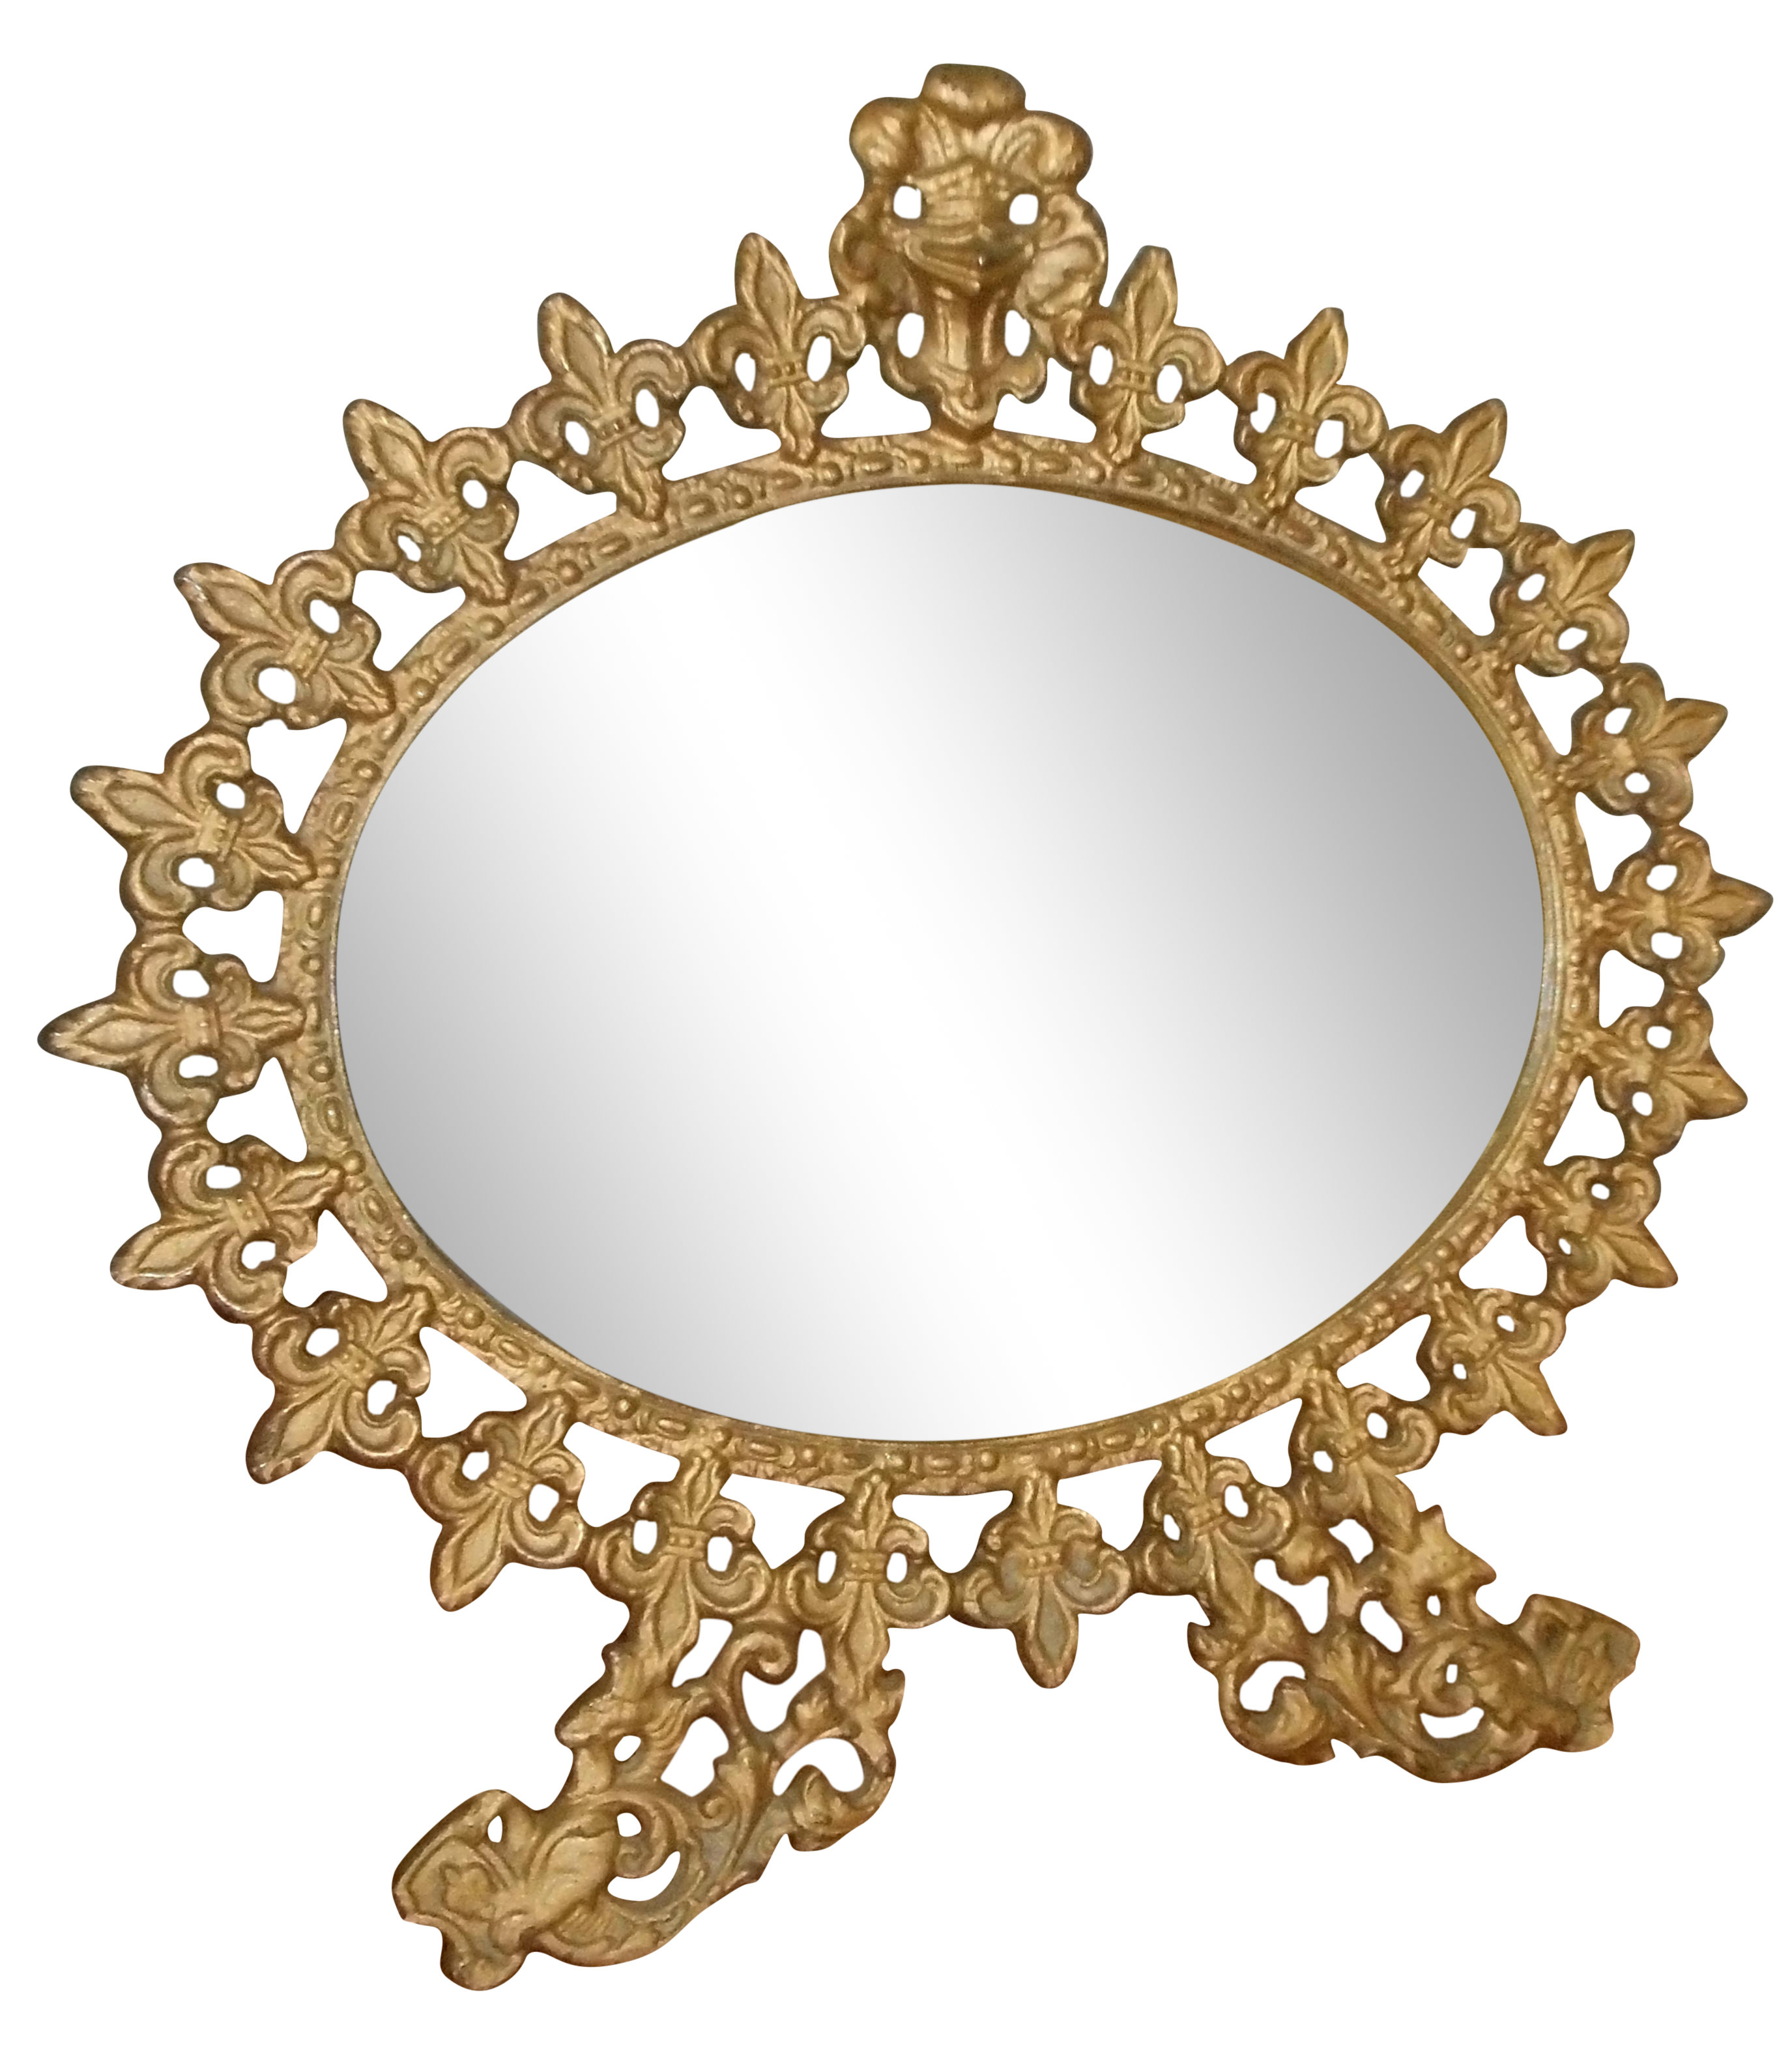 mirror clipart vintage mirror